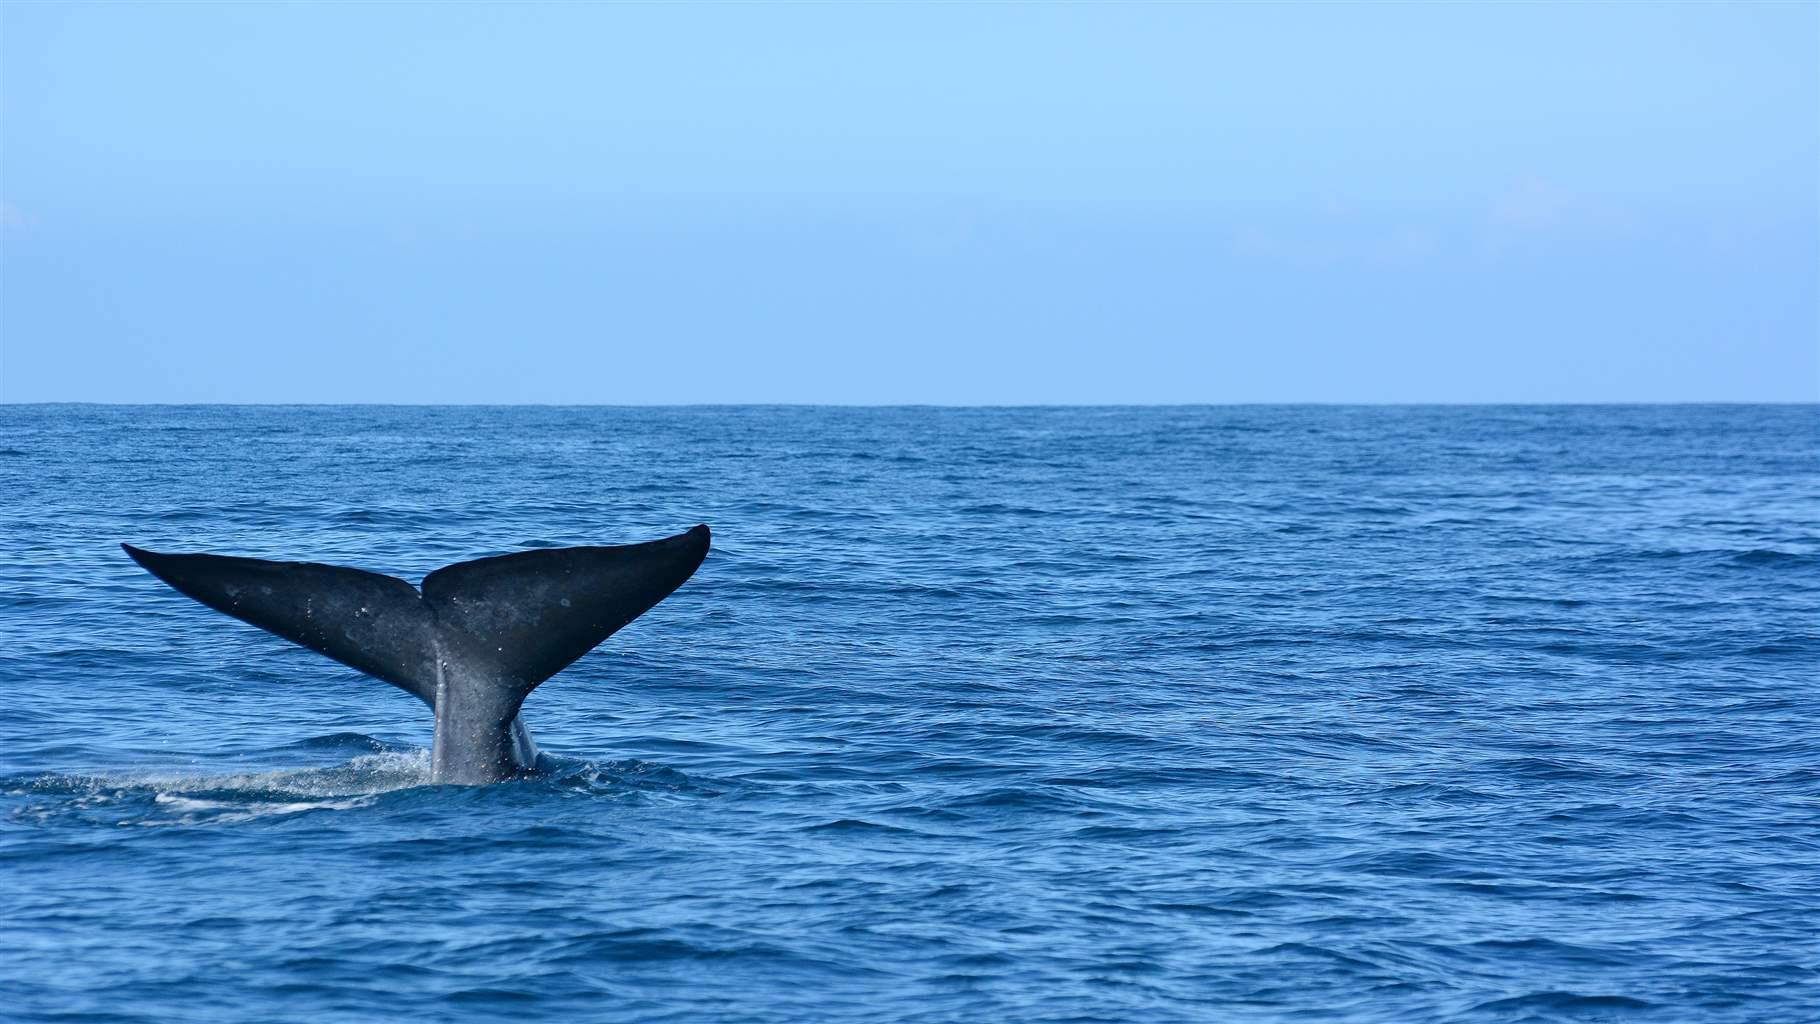 Big blue whales in deep ocean